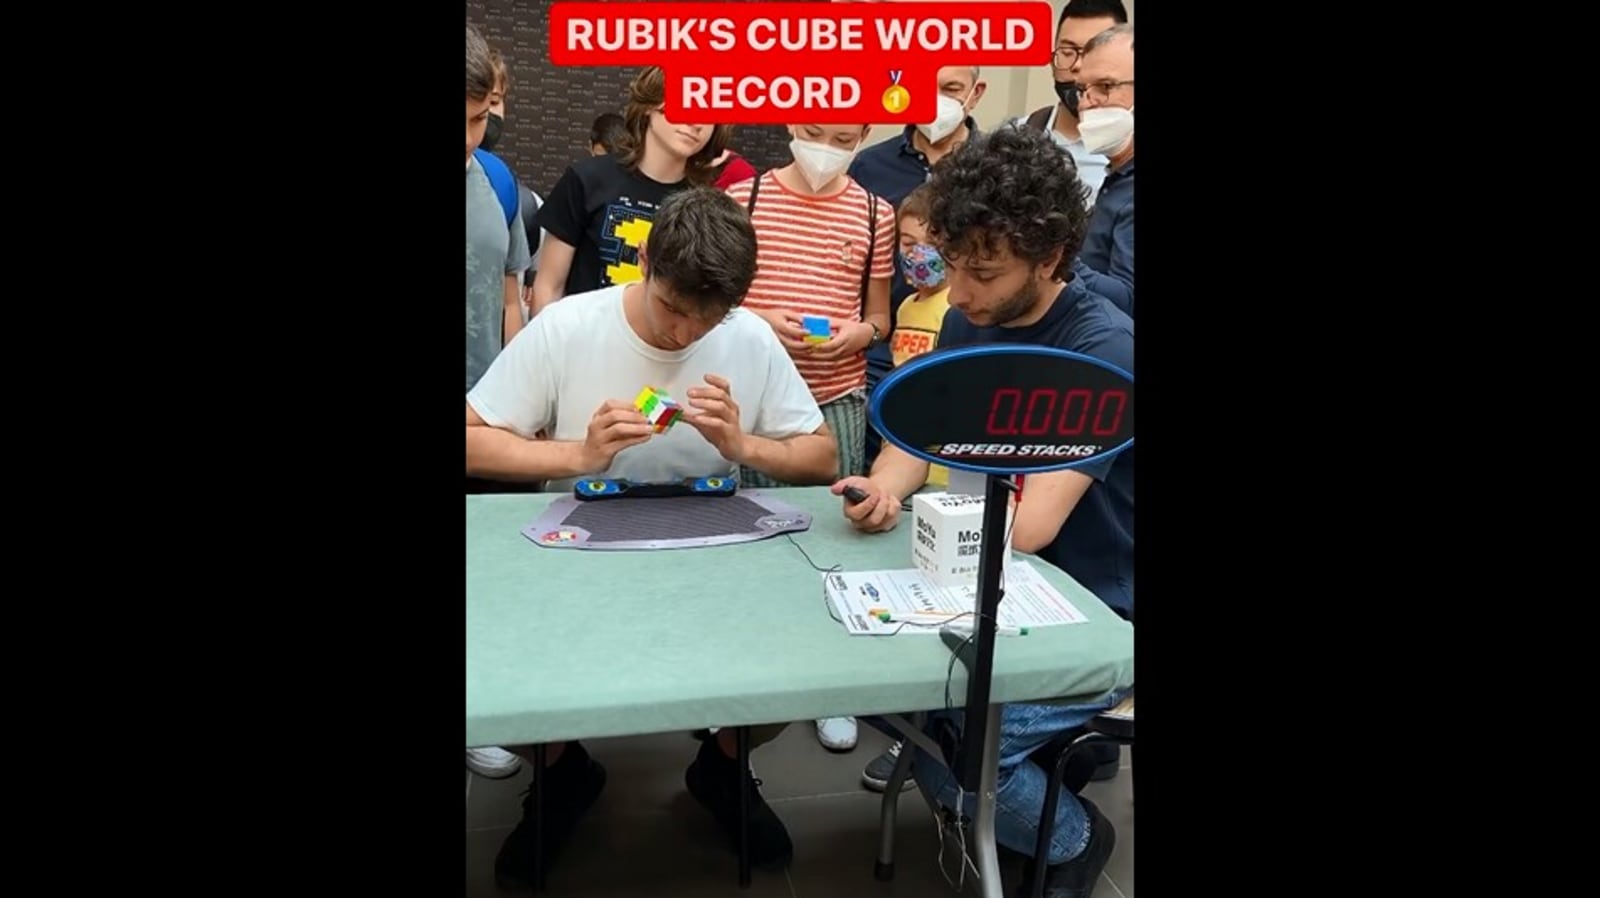 Pria itu “memecahkan” Rubik’s Cube lebih dari satu detik.  Dia berbagi kebenaran di balik video |  Kecenderungan